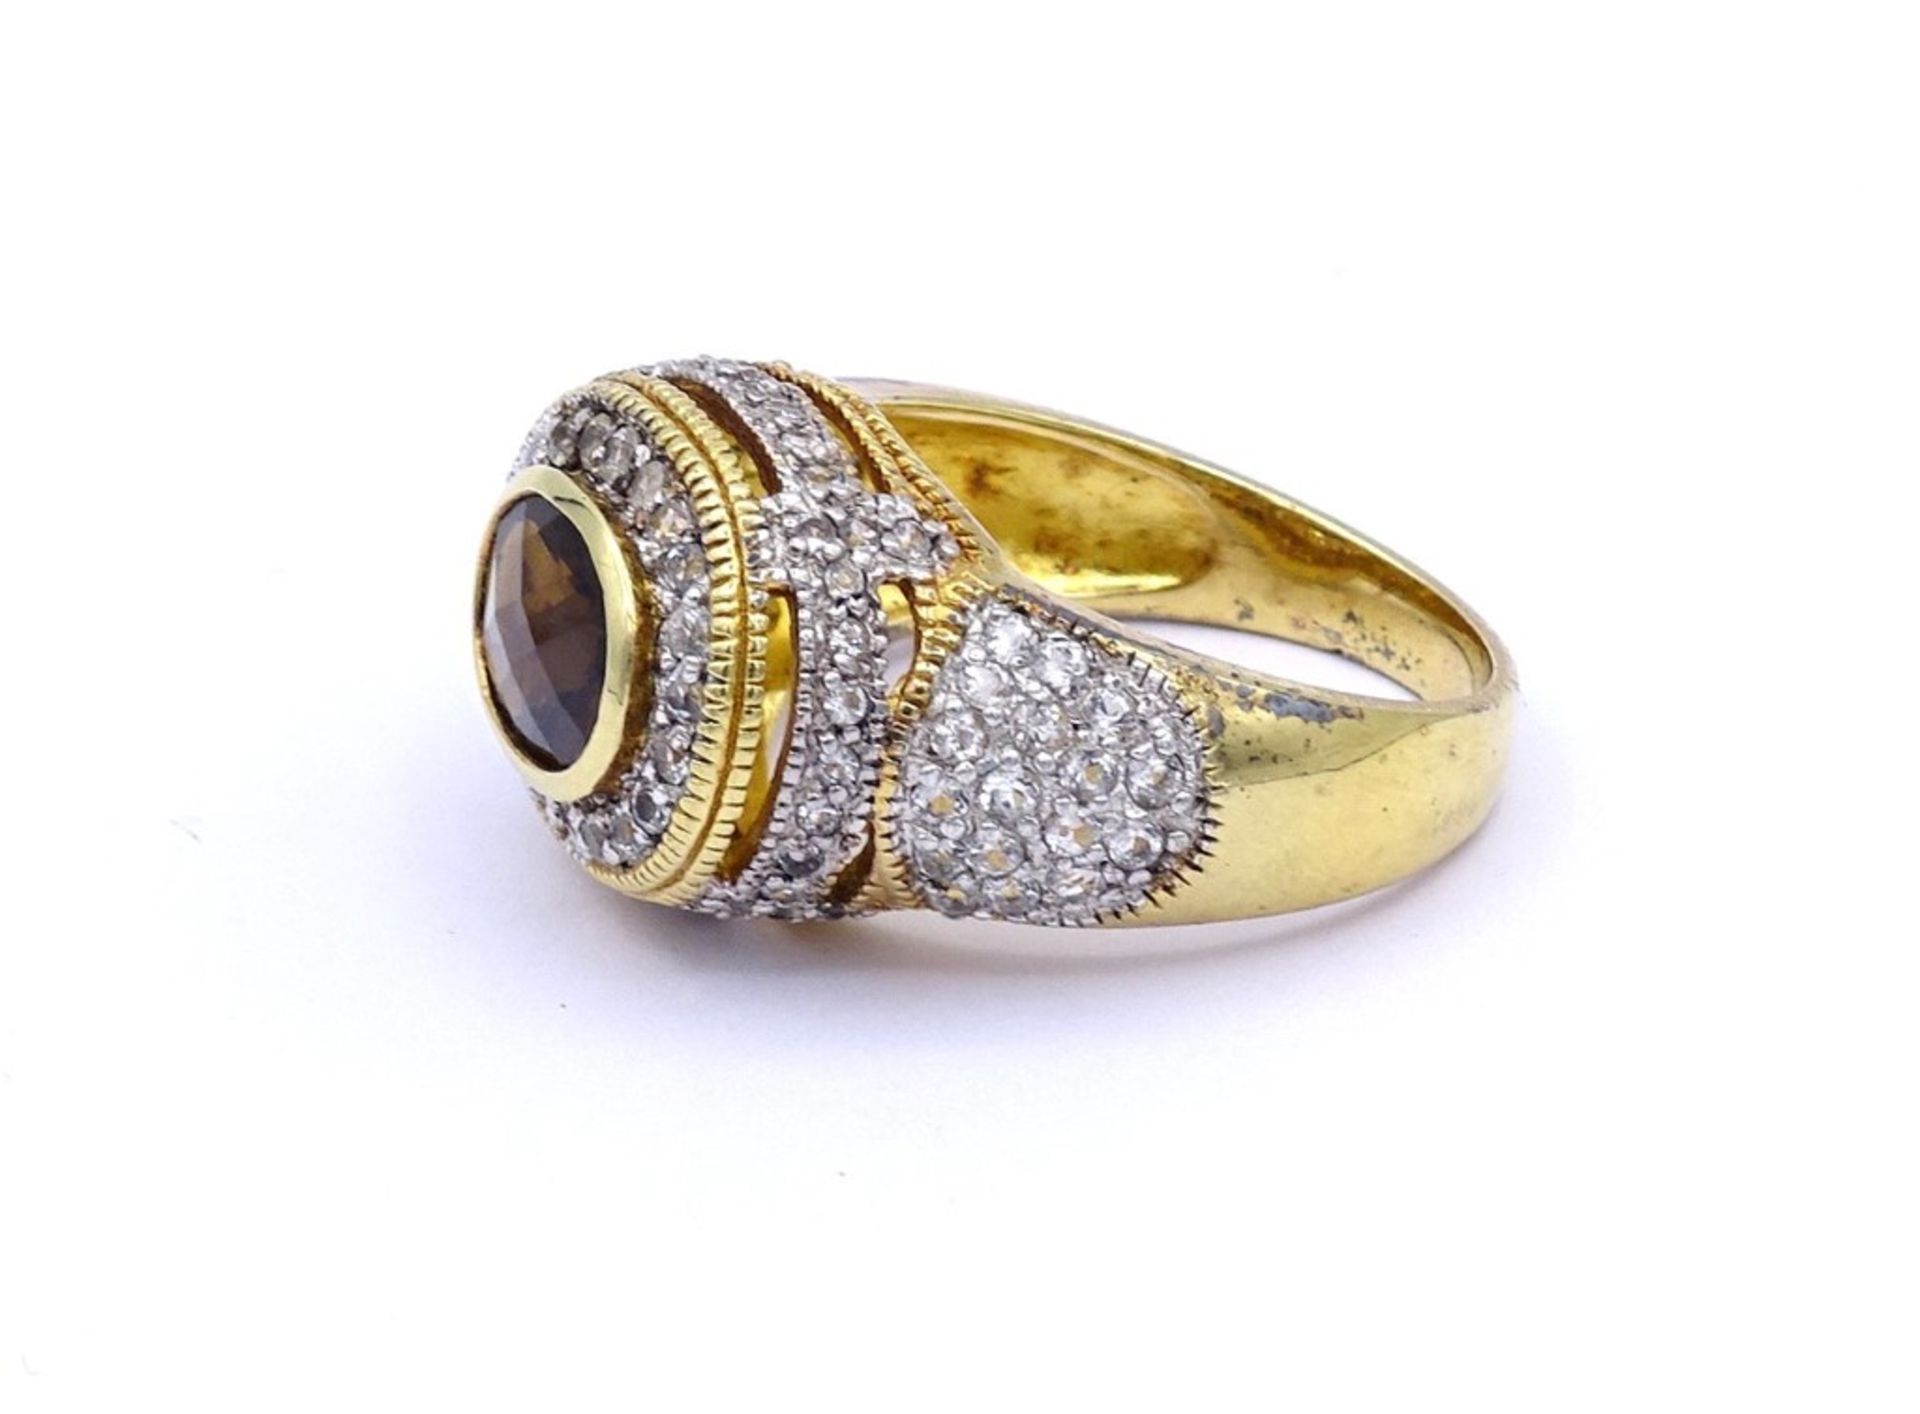 Prachtvoller Silber Ring mit facc.Rauchquarz und rund facc.klaren Steinen,Silber-vergoldet, 925/000, - Bild 3 aus 3